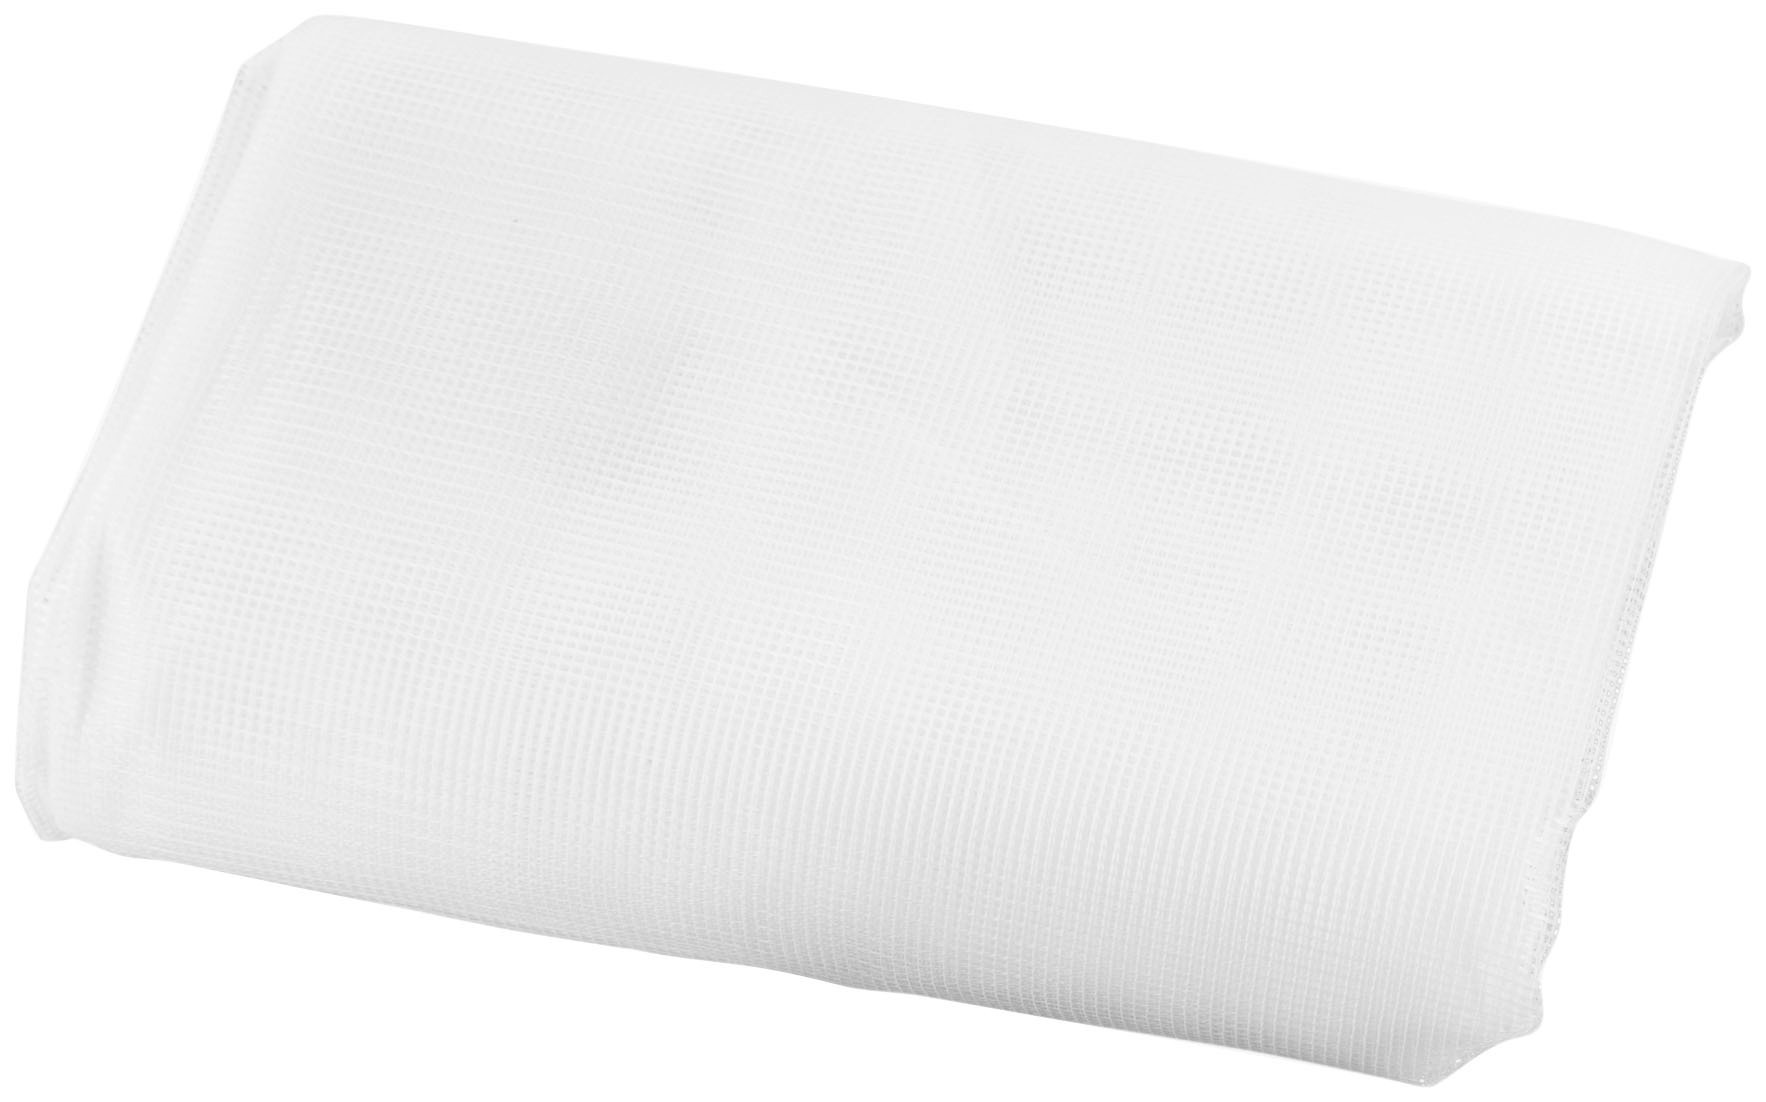 SCHELLENBERG Fliegengitter-Gewebe »50712«, mit Klettband, für Fenster, ohne bohren, 100x130 cm, weiß